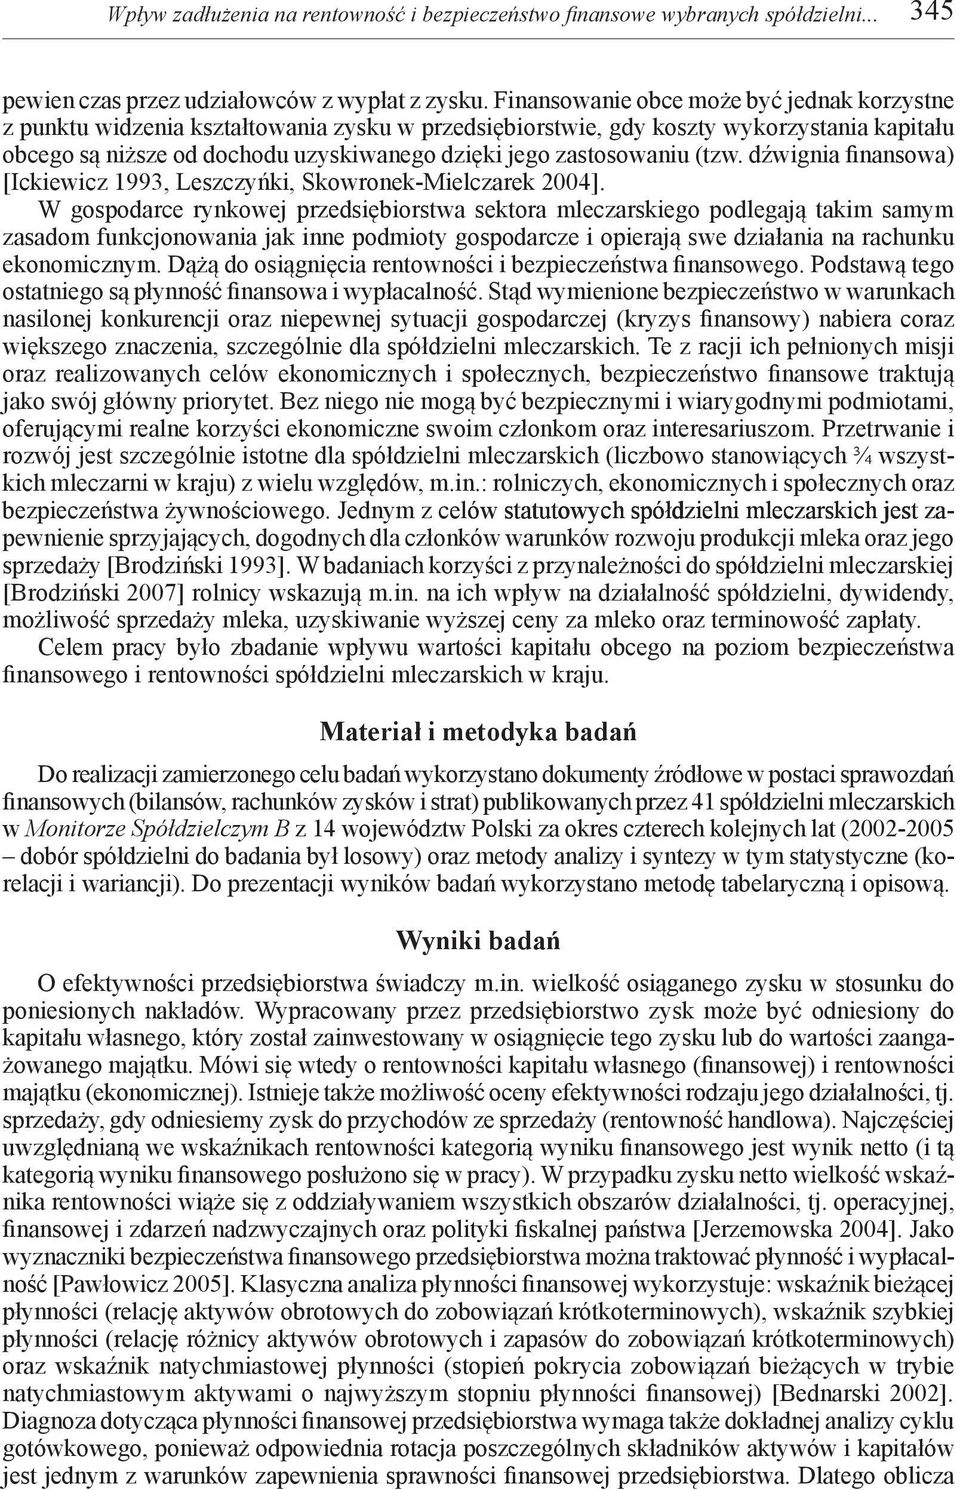 zastosowaniu (tzw. dźwignia finansowa) [Ickiewicz 1993, Leszczyńki, Skowronek-Mielczarek 2004].